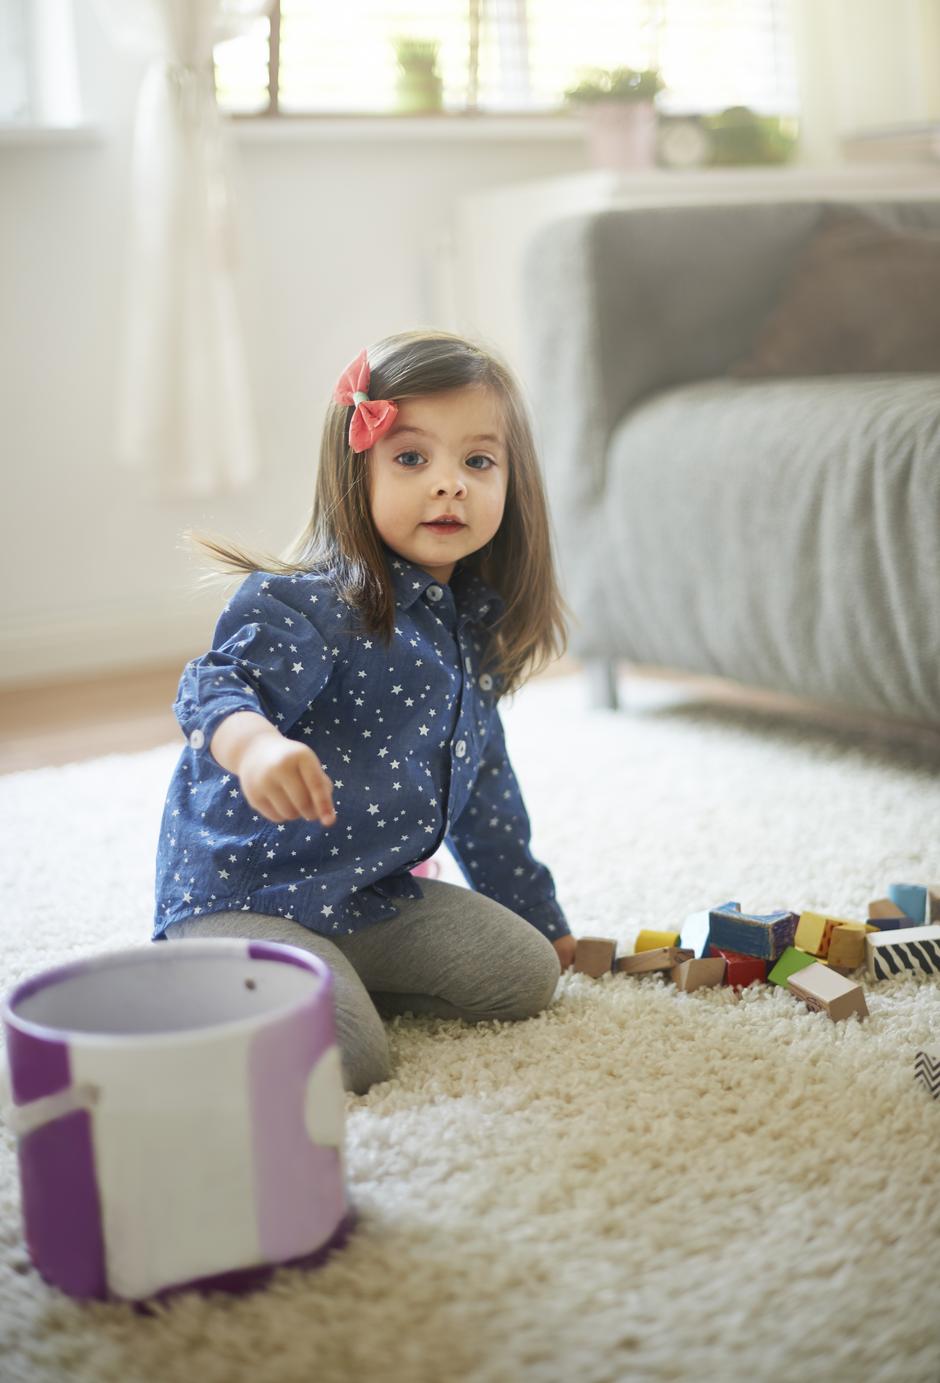 djevojčica pospremanje igračke | Author: Thinkstock